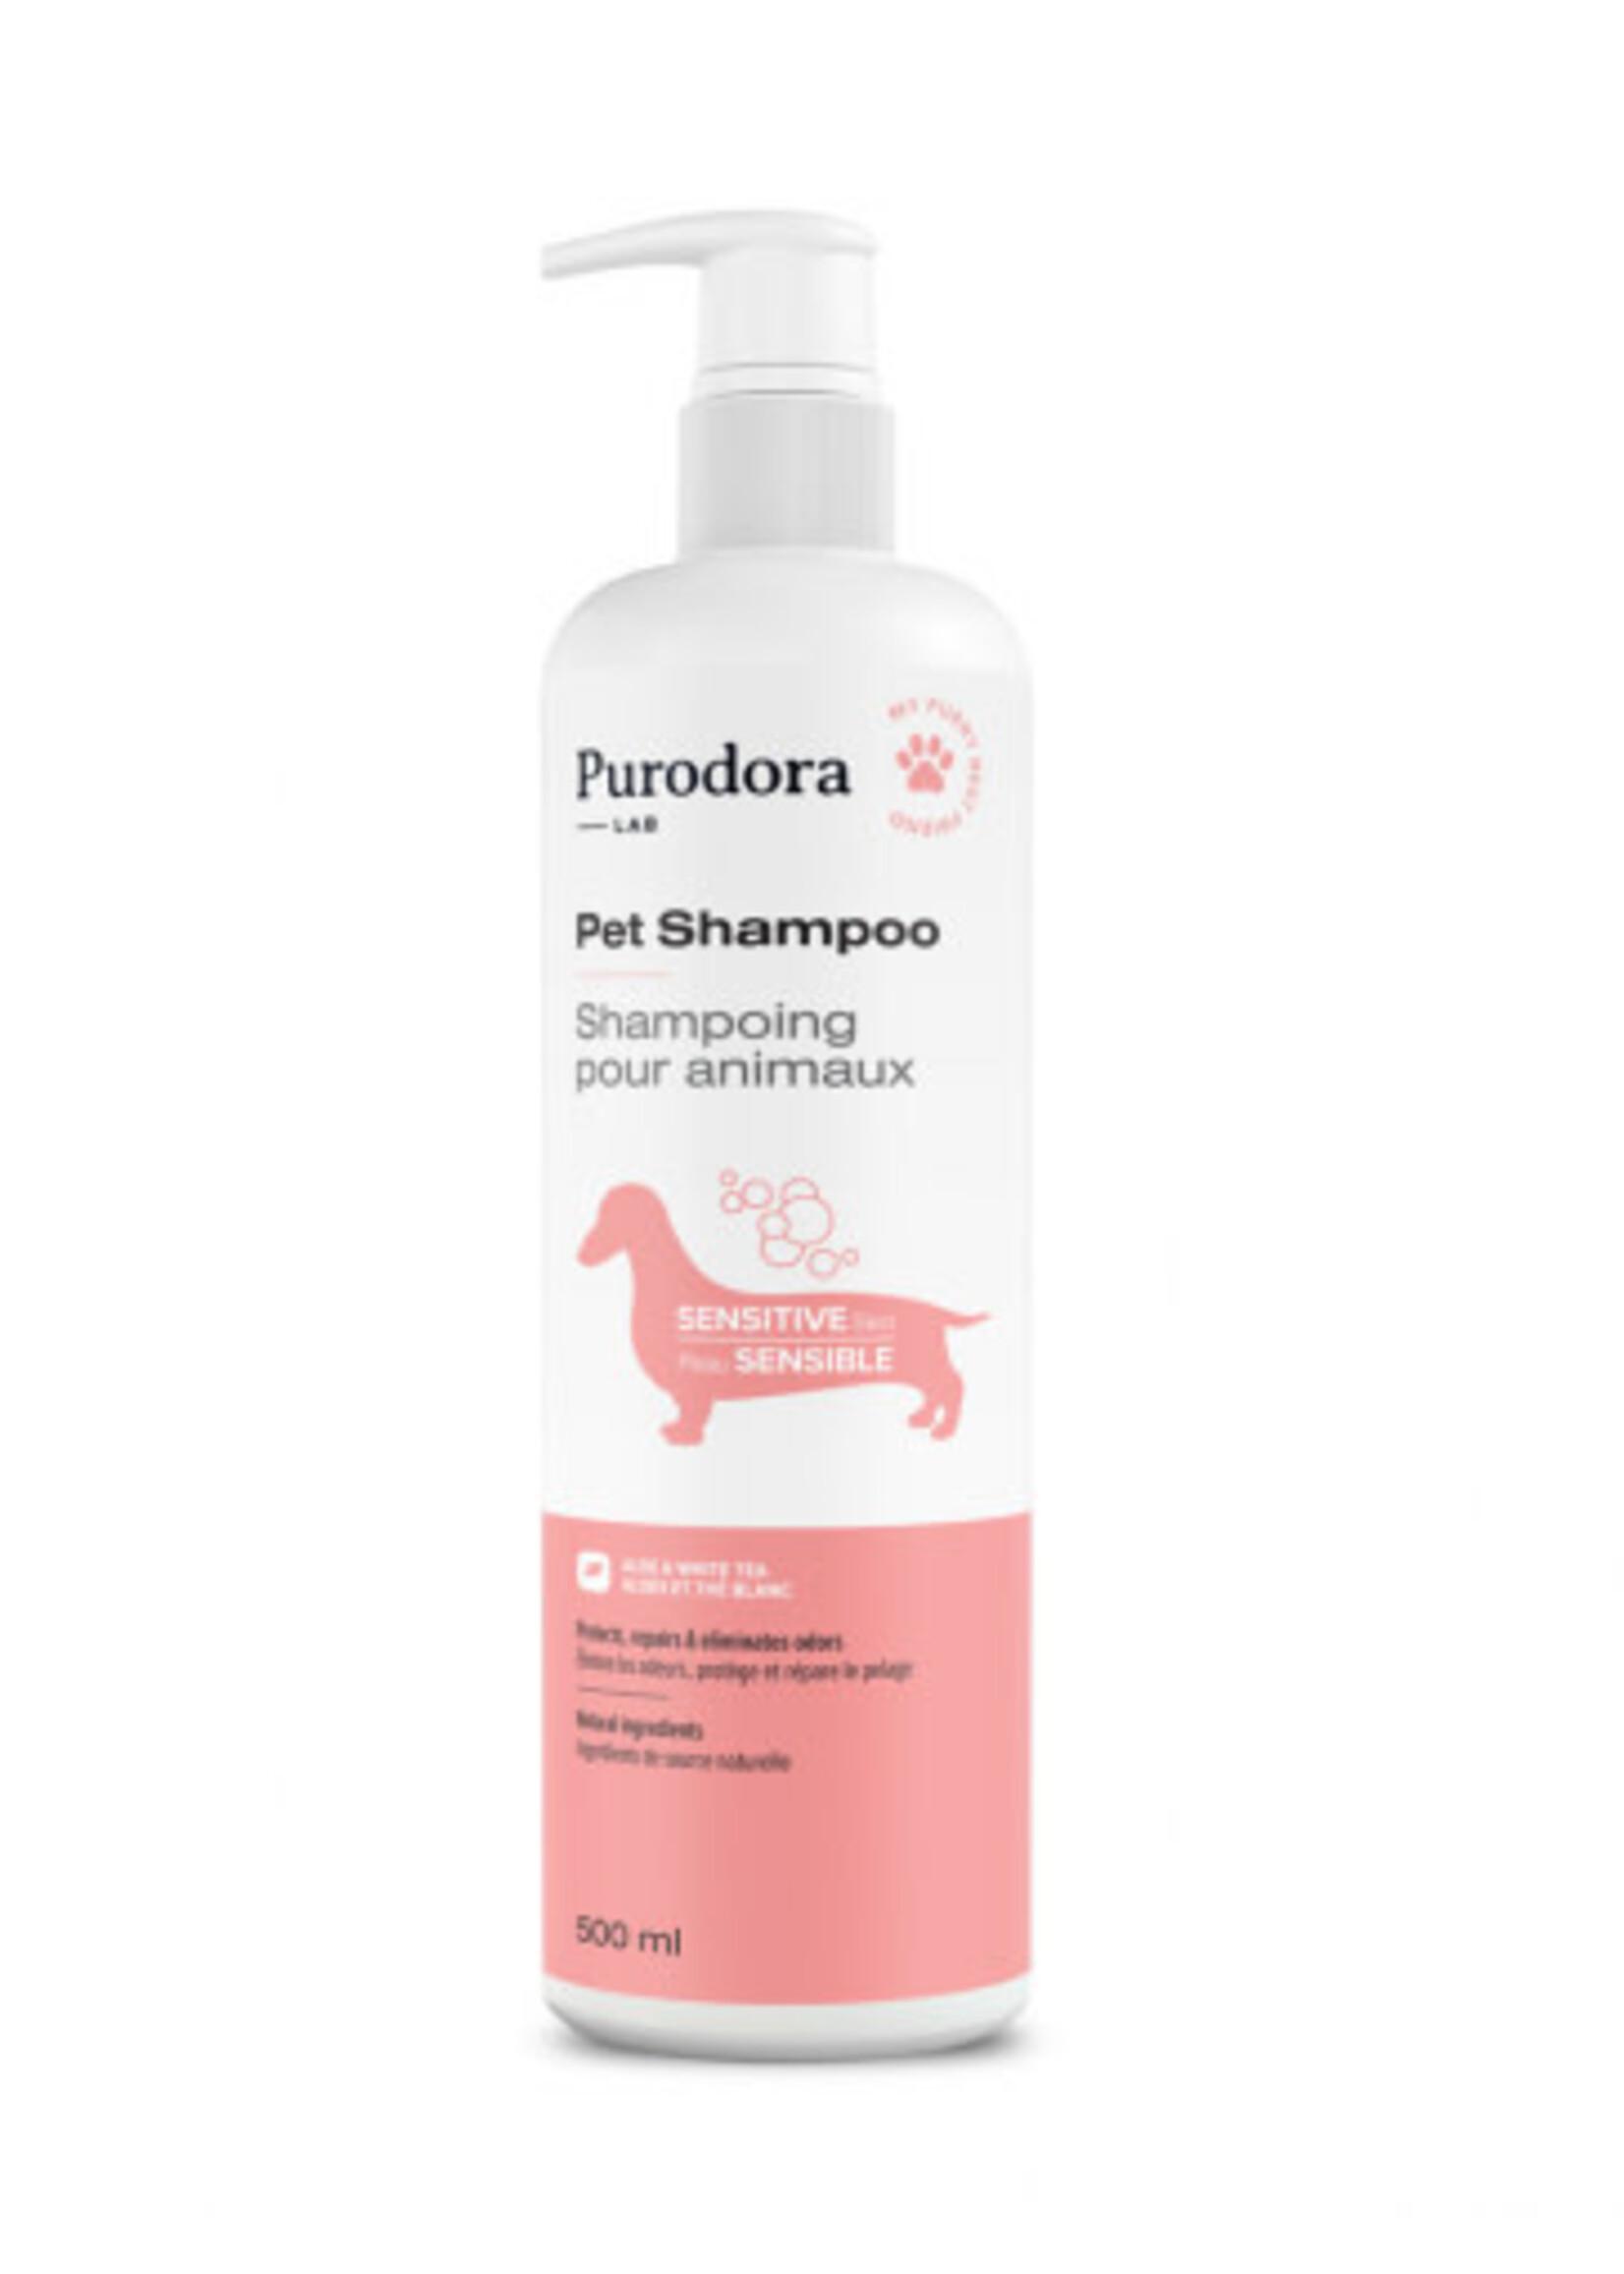 Purodora Purodora - Pet Shampoo for Sensitive Skin 500ml